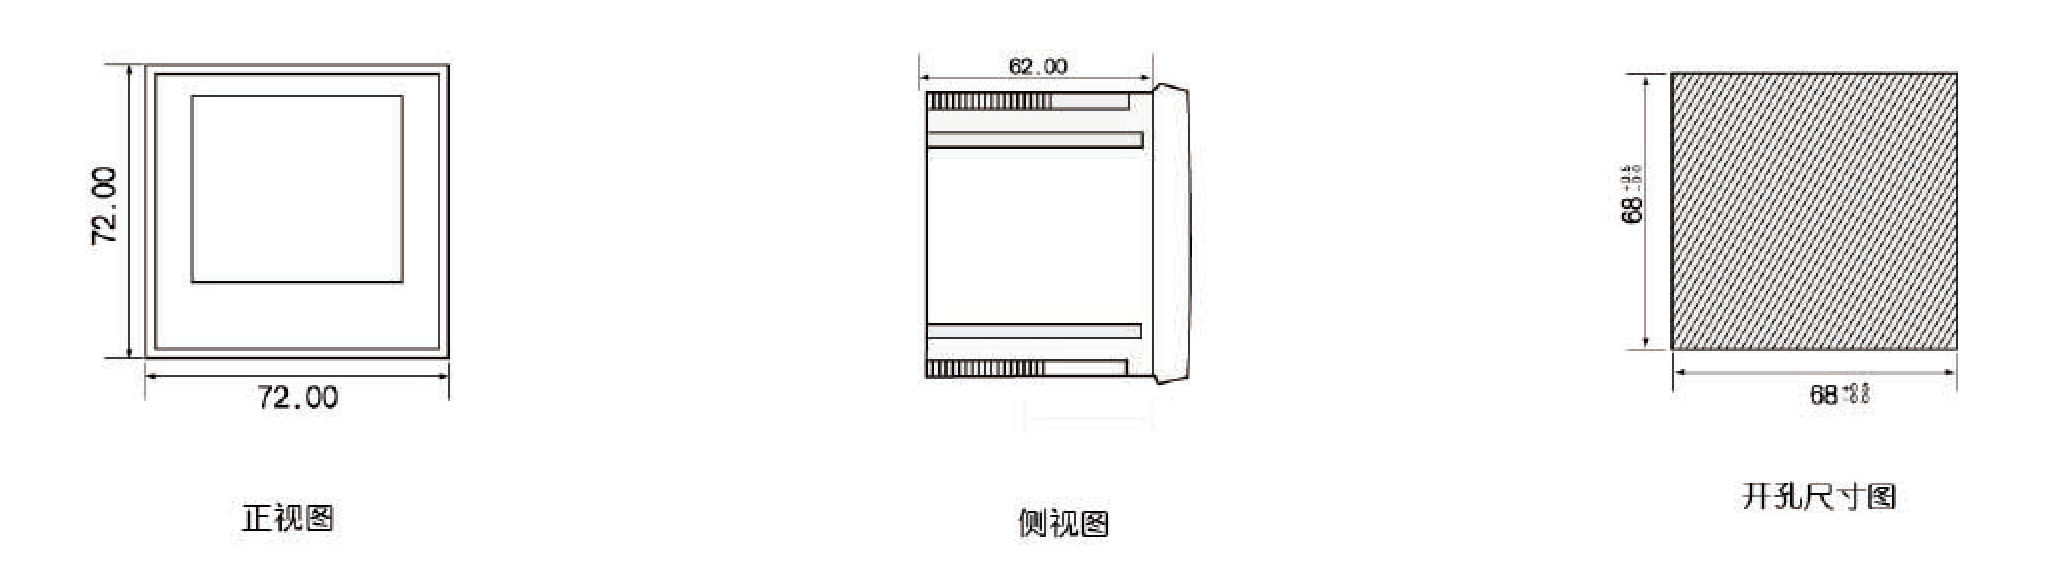 RGB53小型三相液晶智能仪表系列产品选型表+安装尺寸图